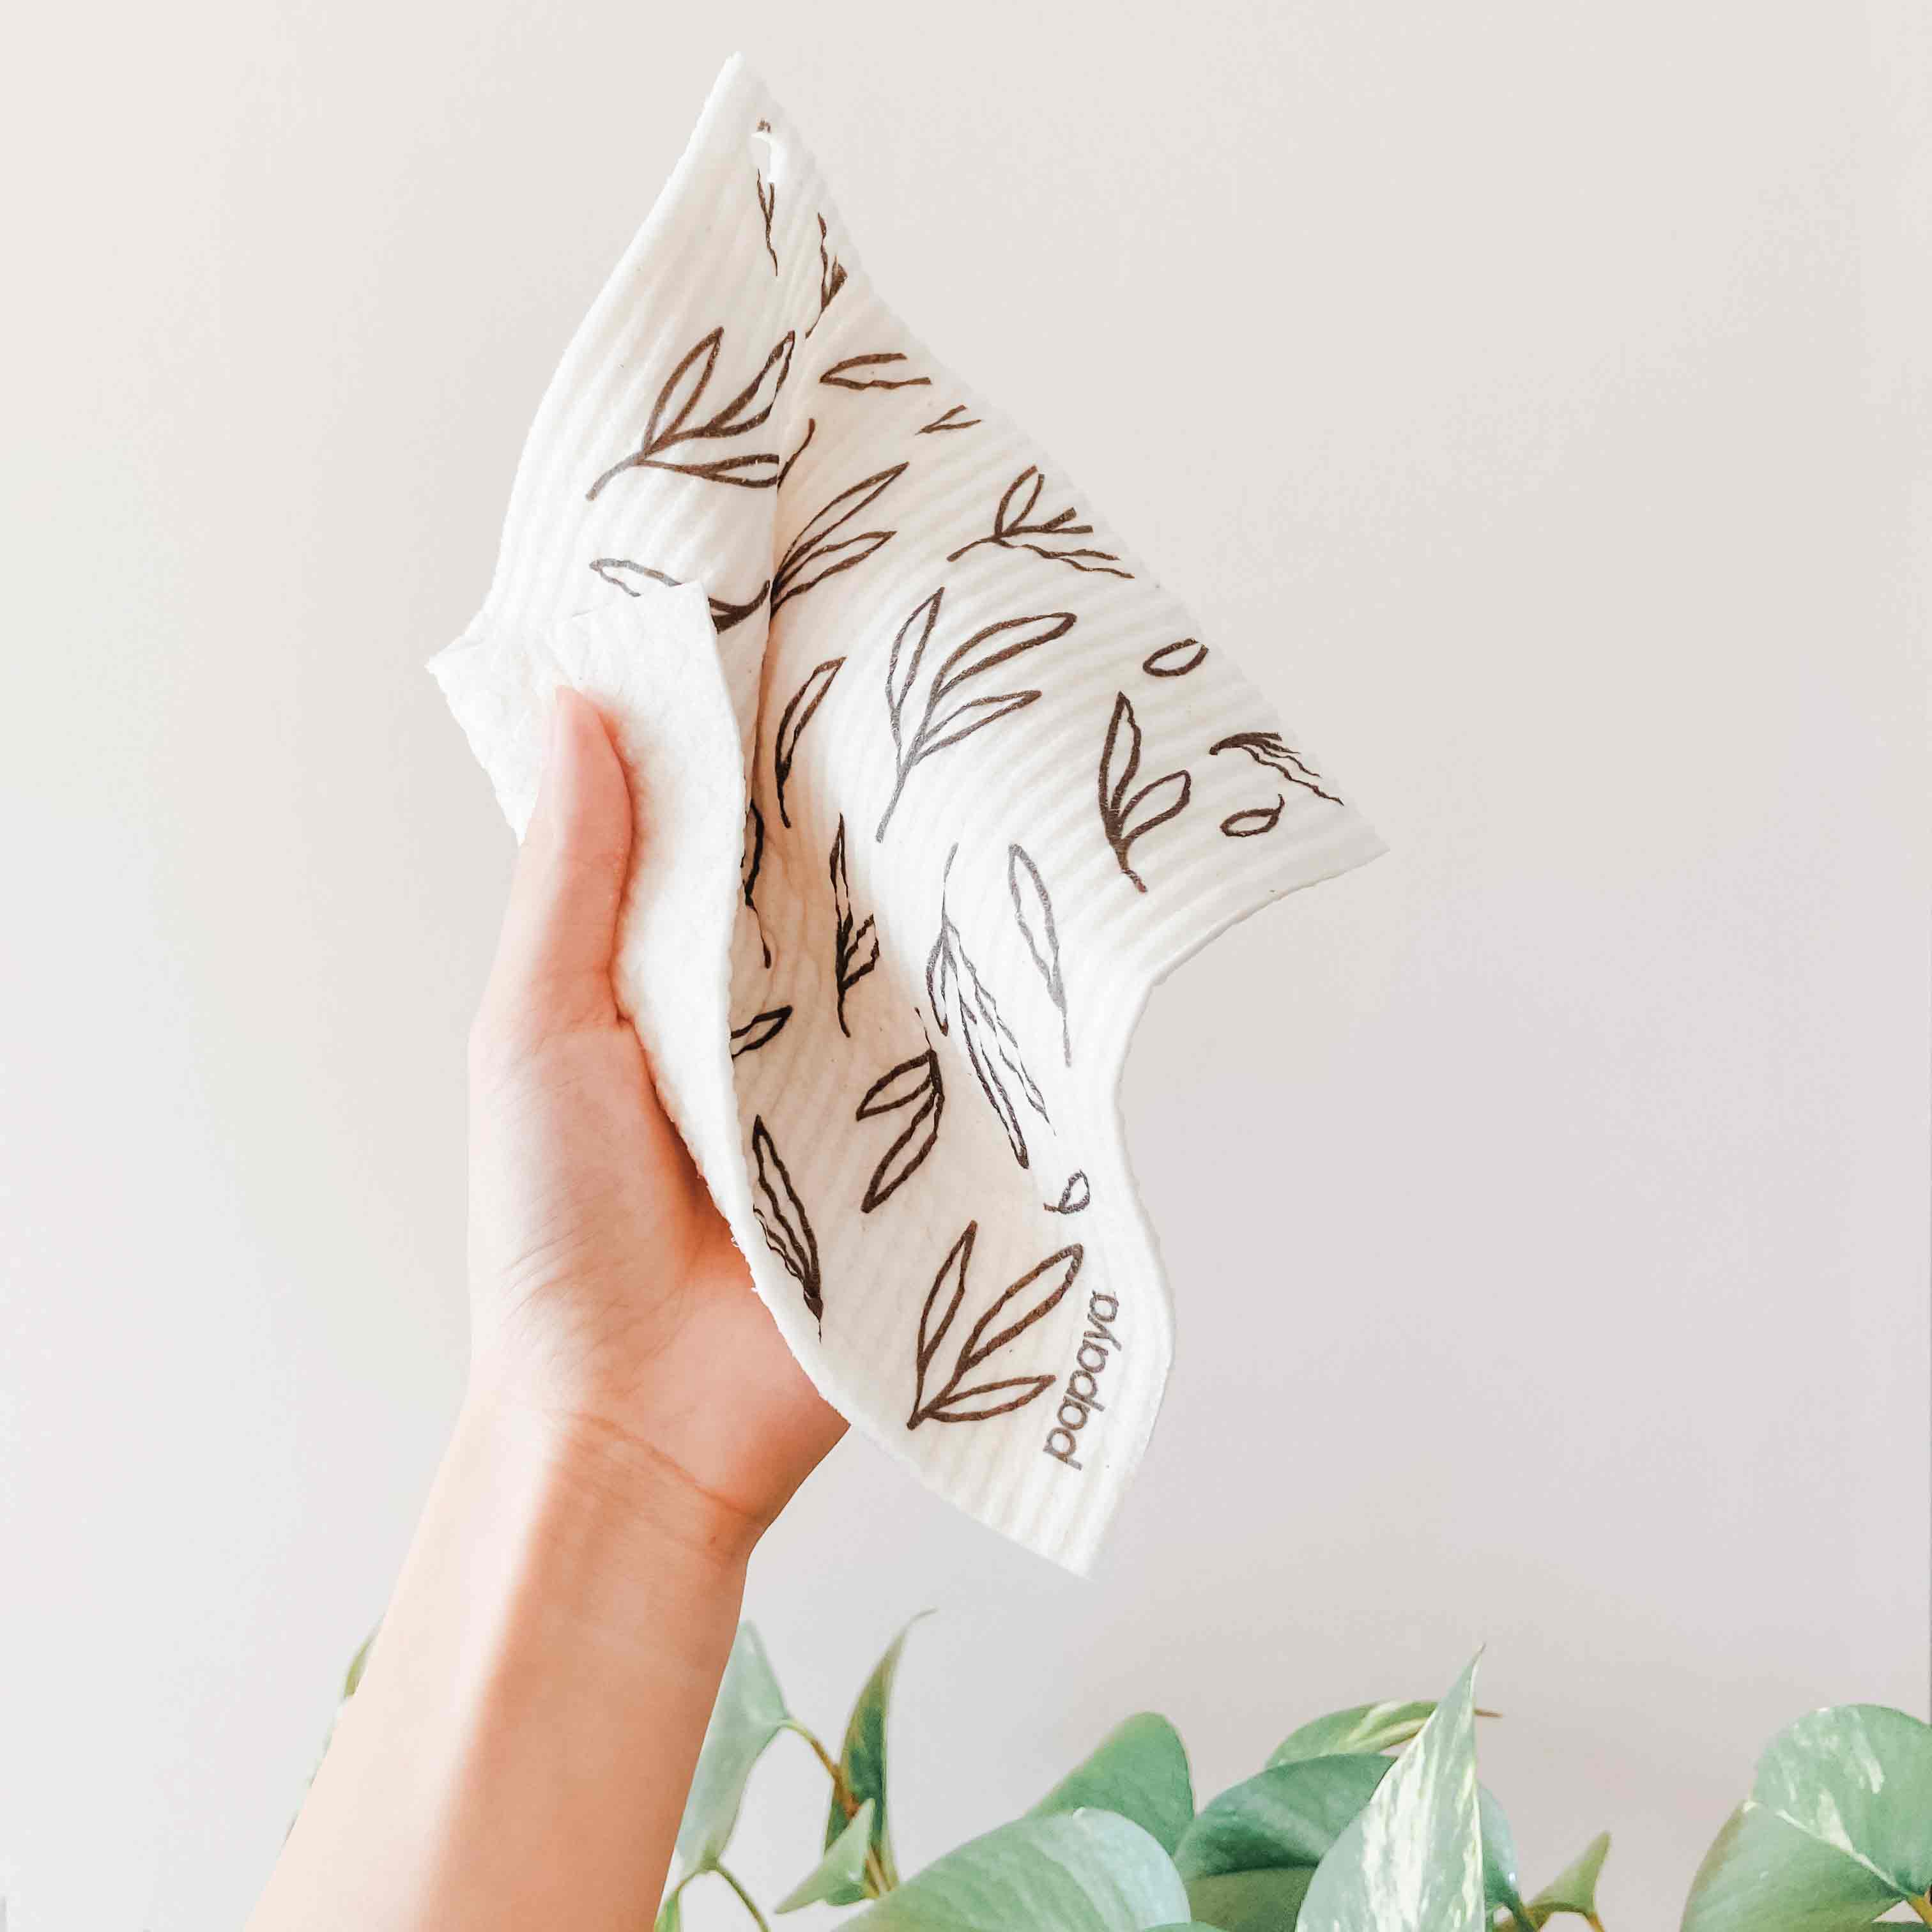 Papaya Reusable Paper Towels – Grey Boxer